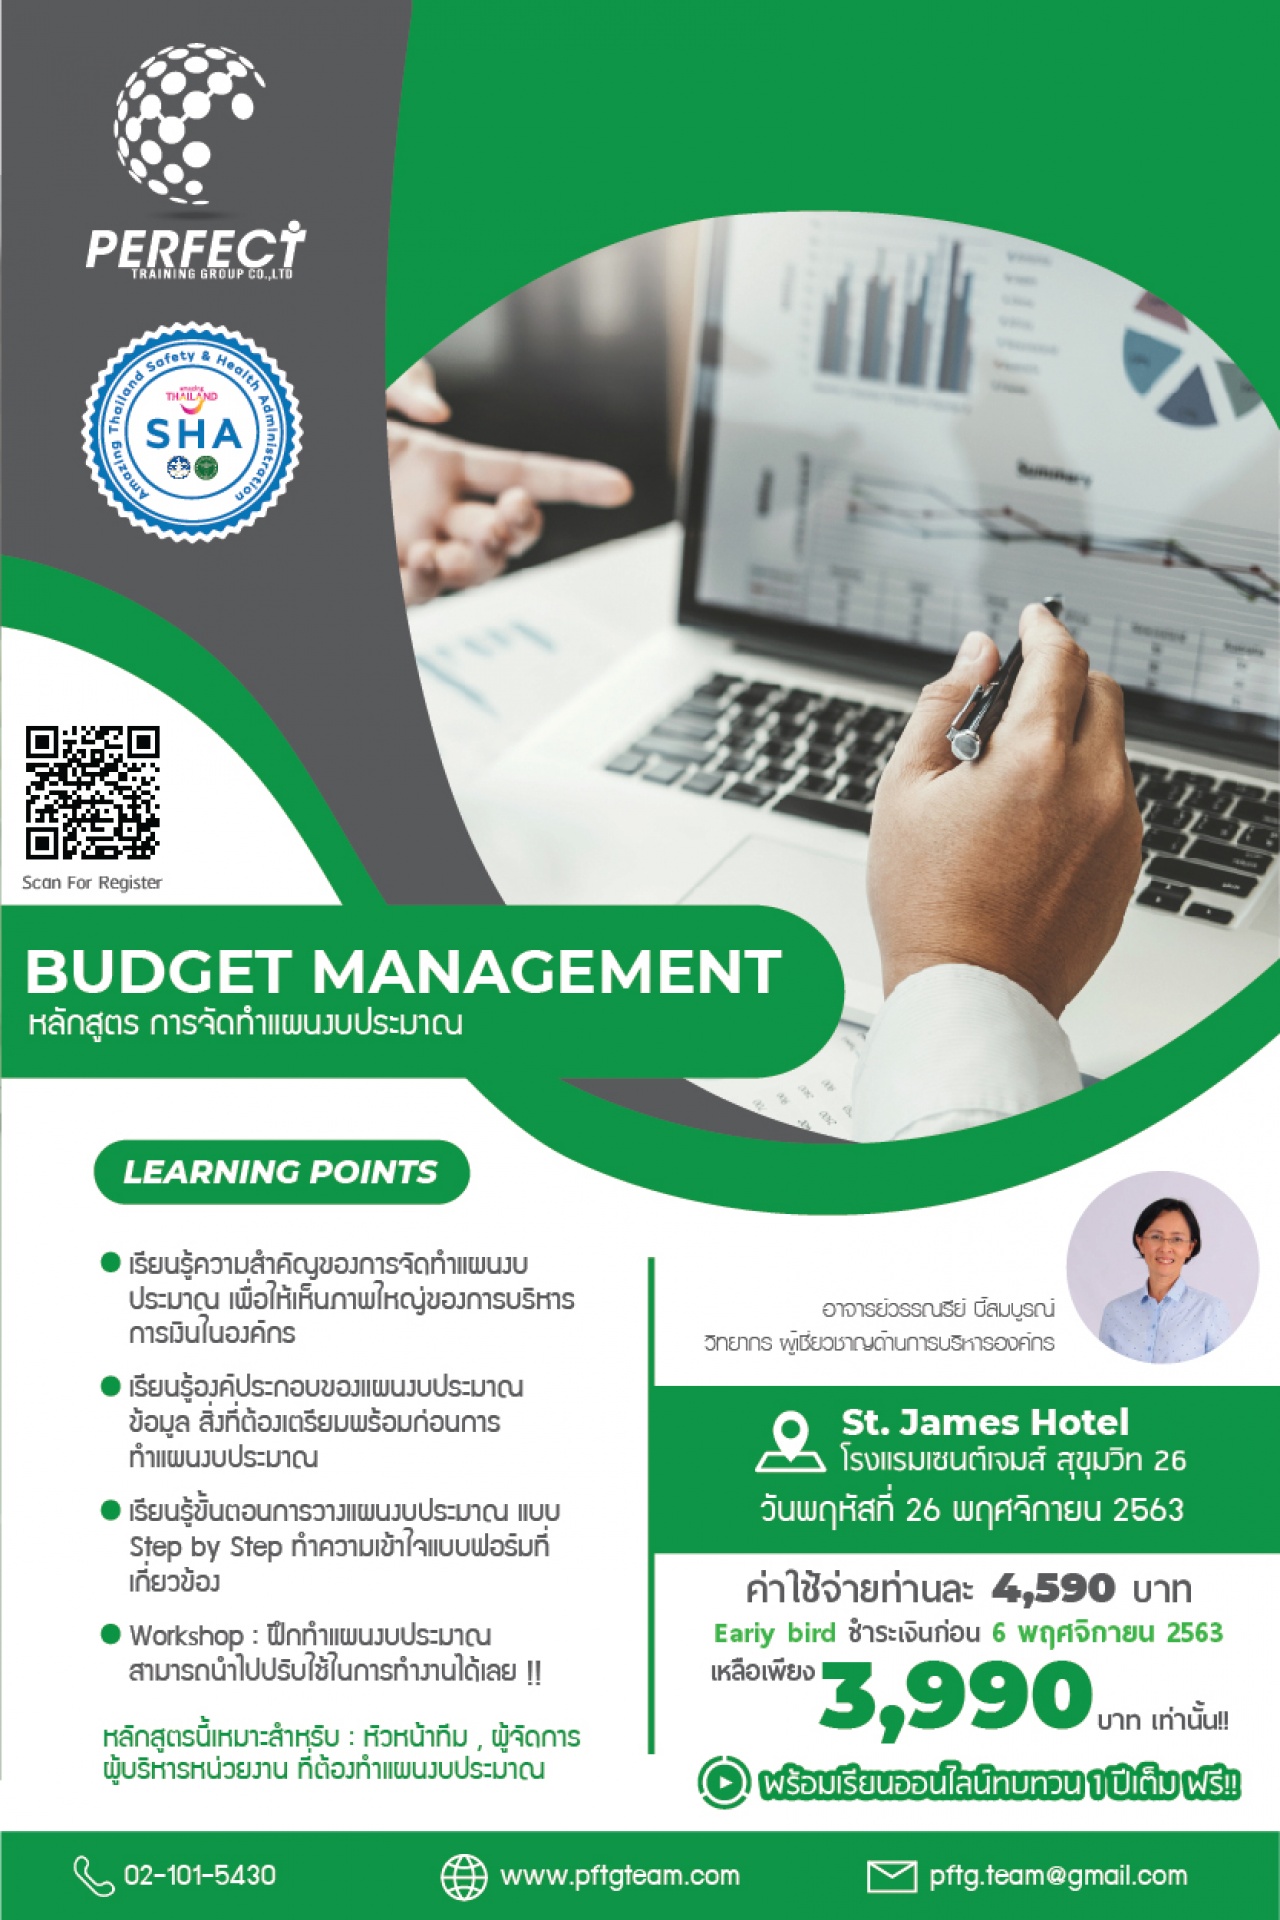 หลักสูตร การจัดทำแผนงบประมาณ (Budget Management)